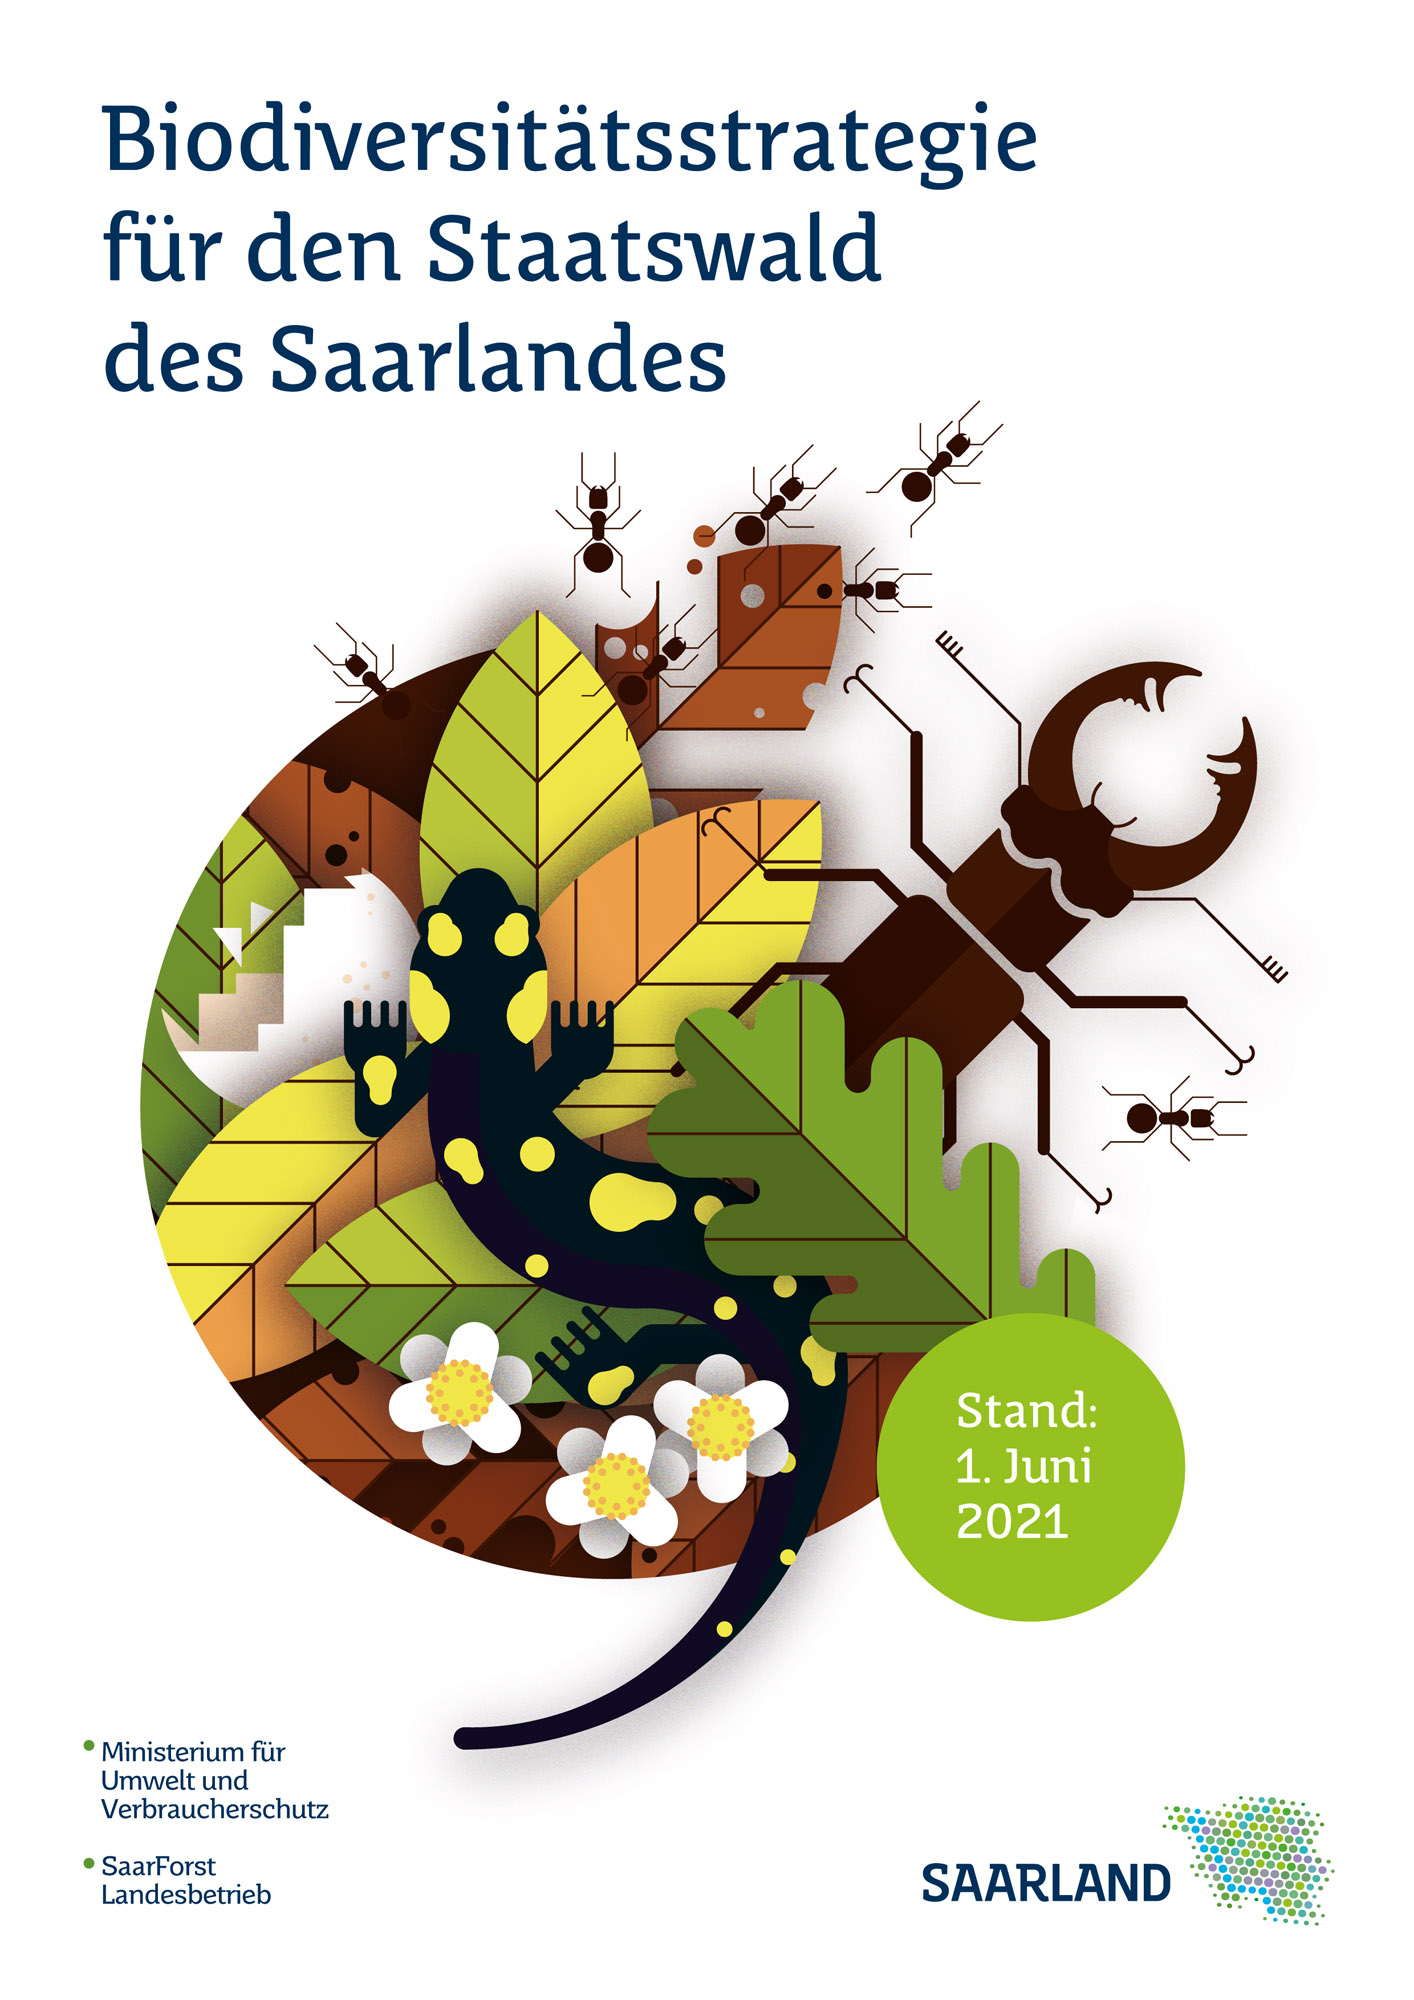 Das Bild zeigt das Titelbild des Flyers "Biodiversitätsstrategie für den Staatswald des Saarlandes".